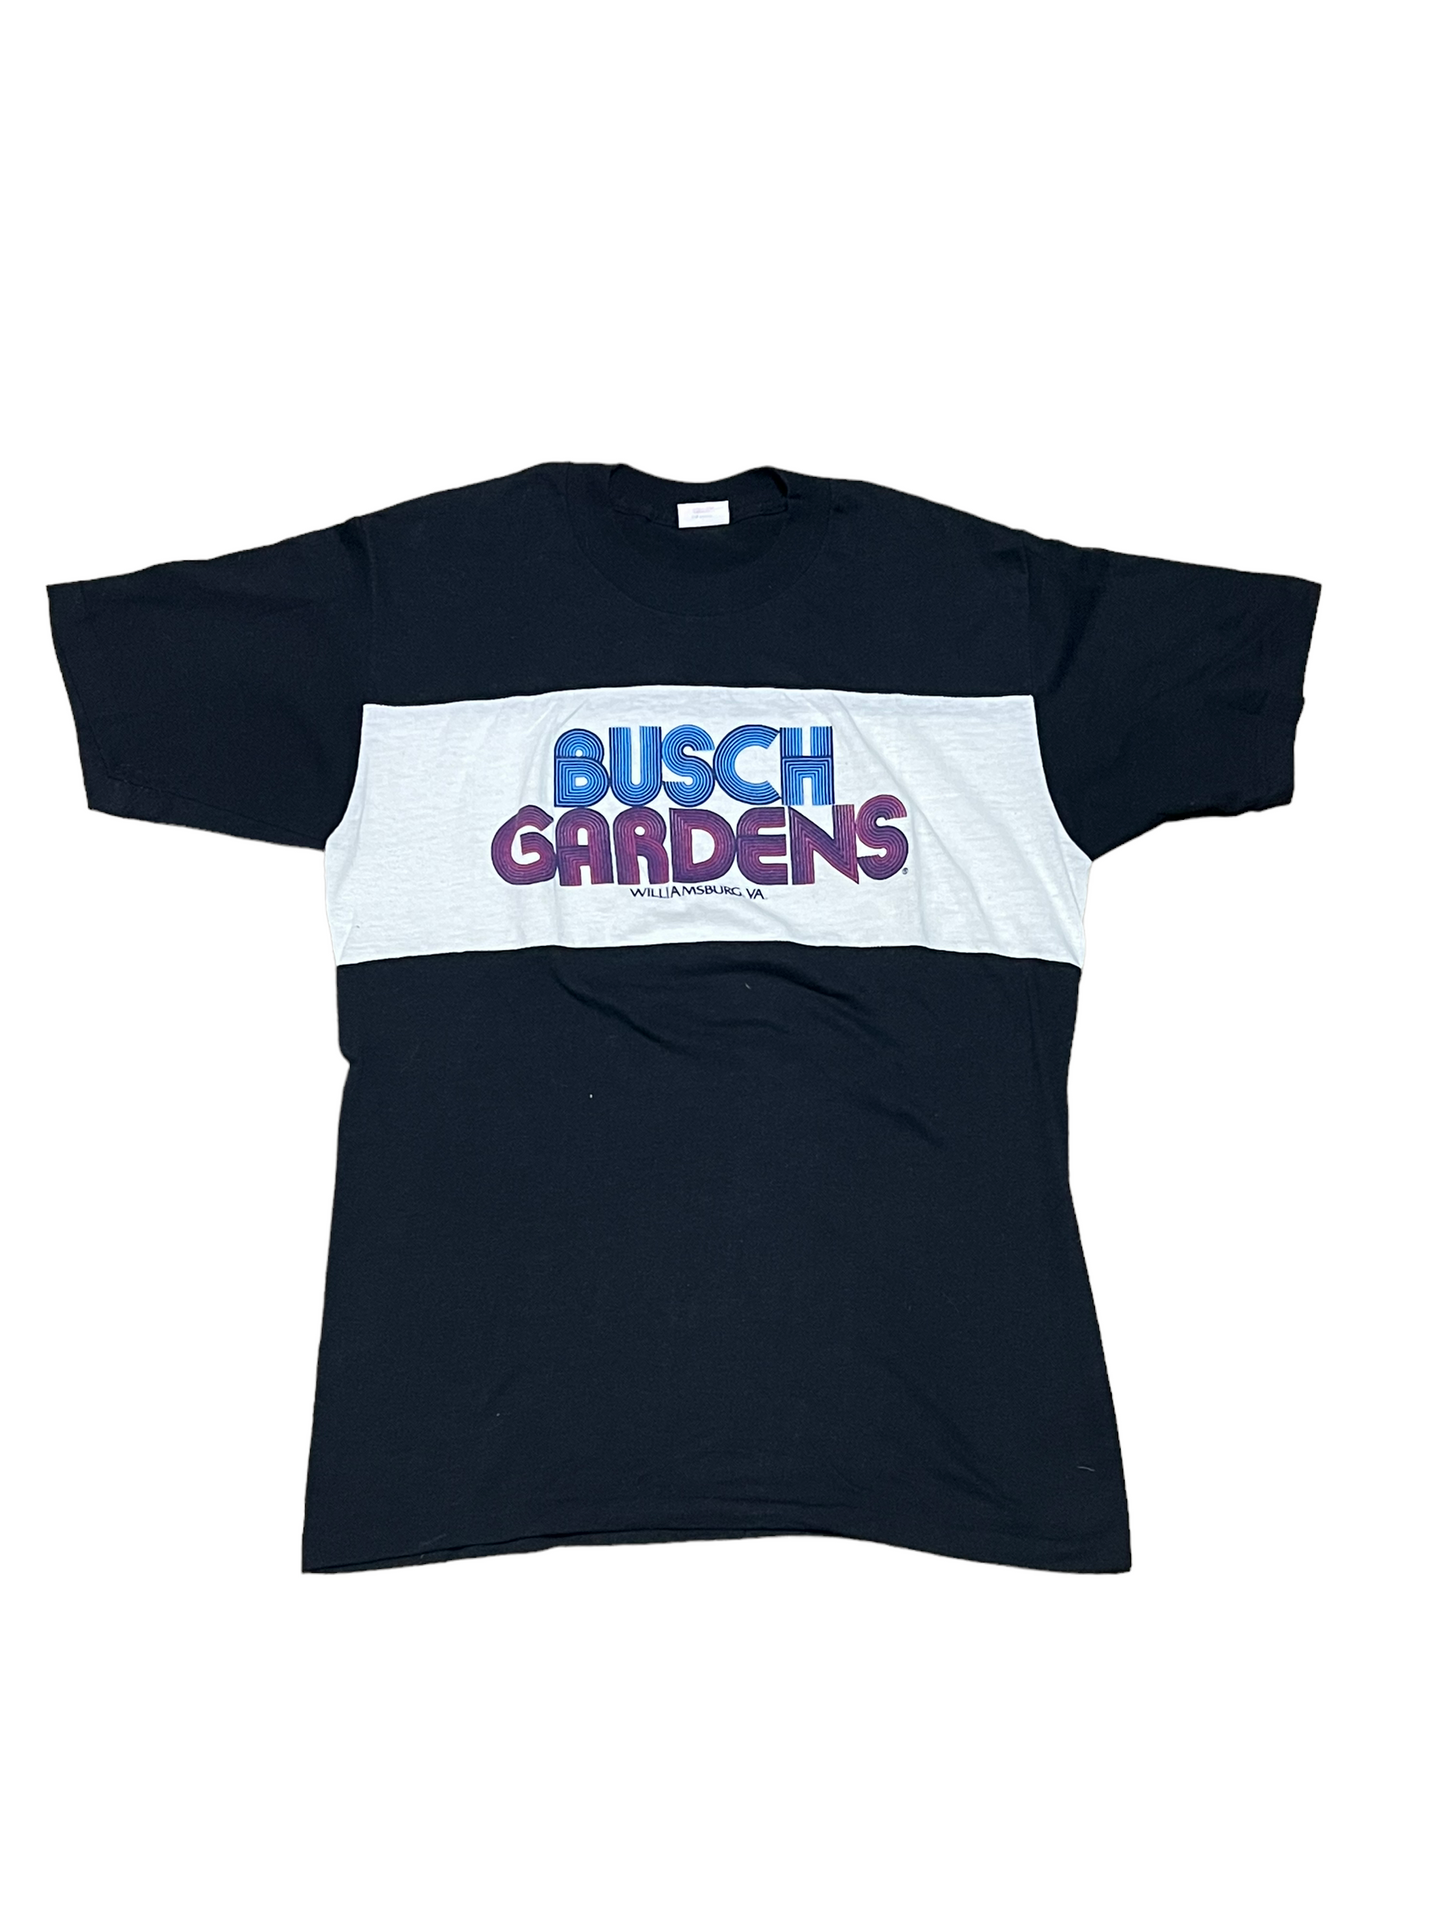 Vintage 1980s Busch Gardens Shirt